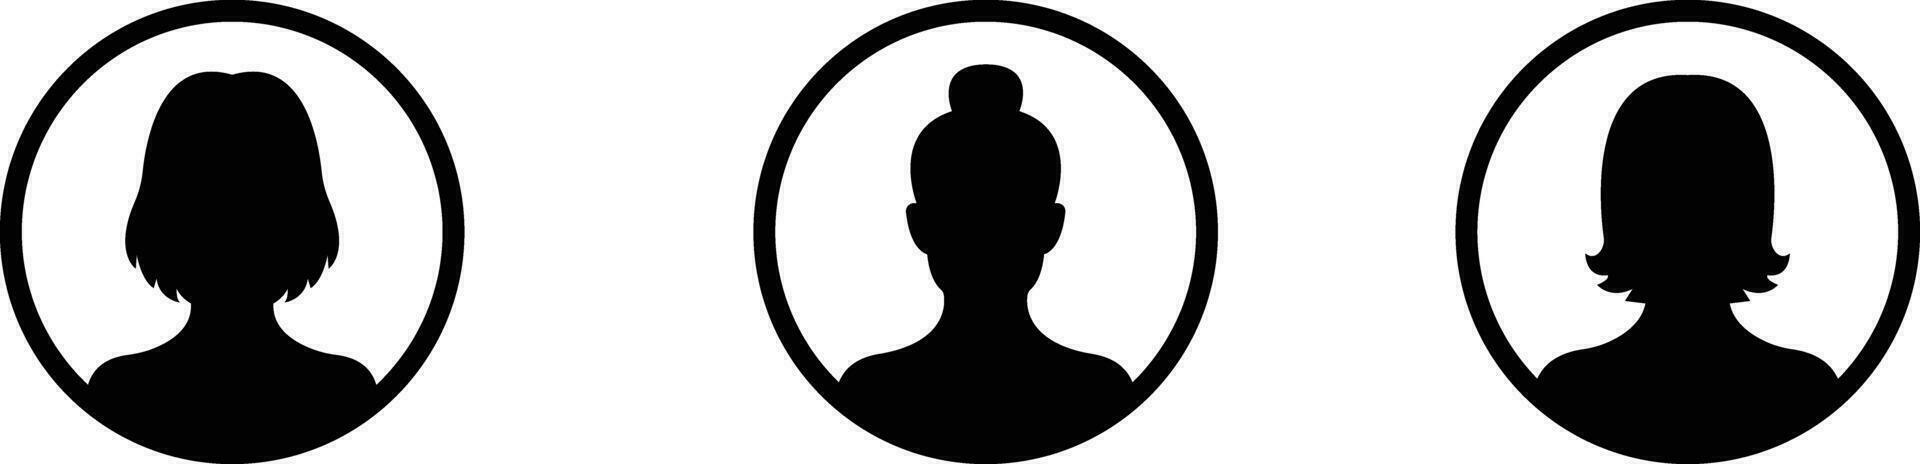 företag avatar profil svart ikon uppsättning. samling kvinnor av användare vektor symbol i trendig platt stil isolerat på . profil olika ansikte för social nätverk eller webb.